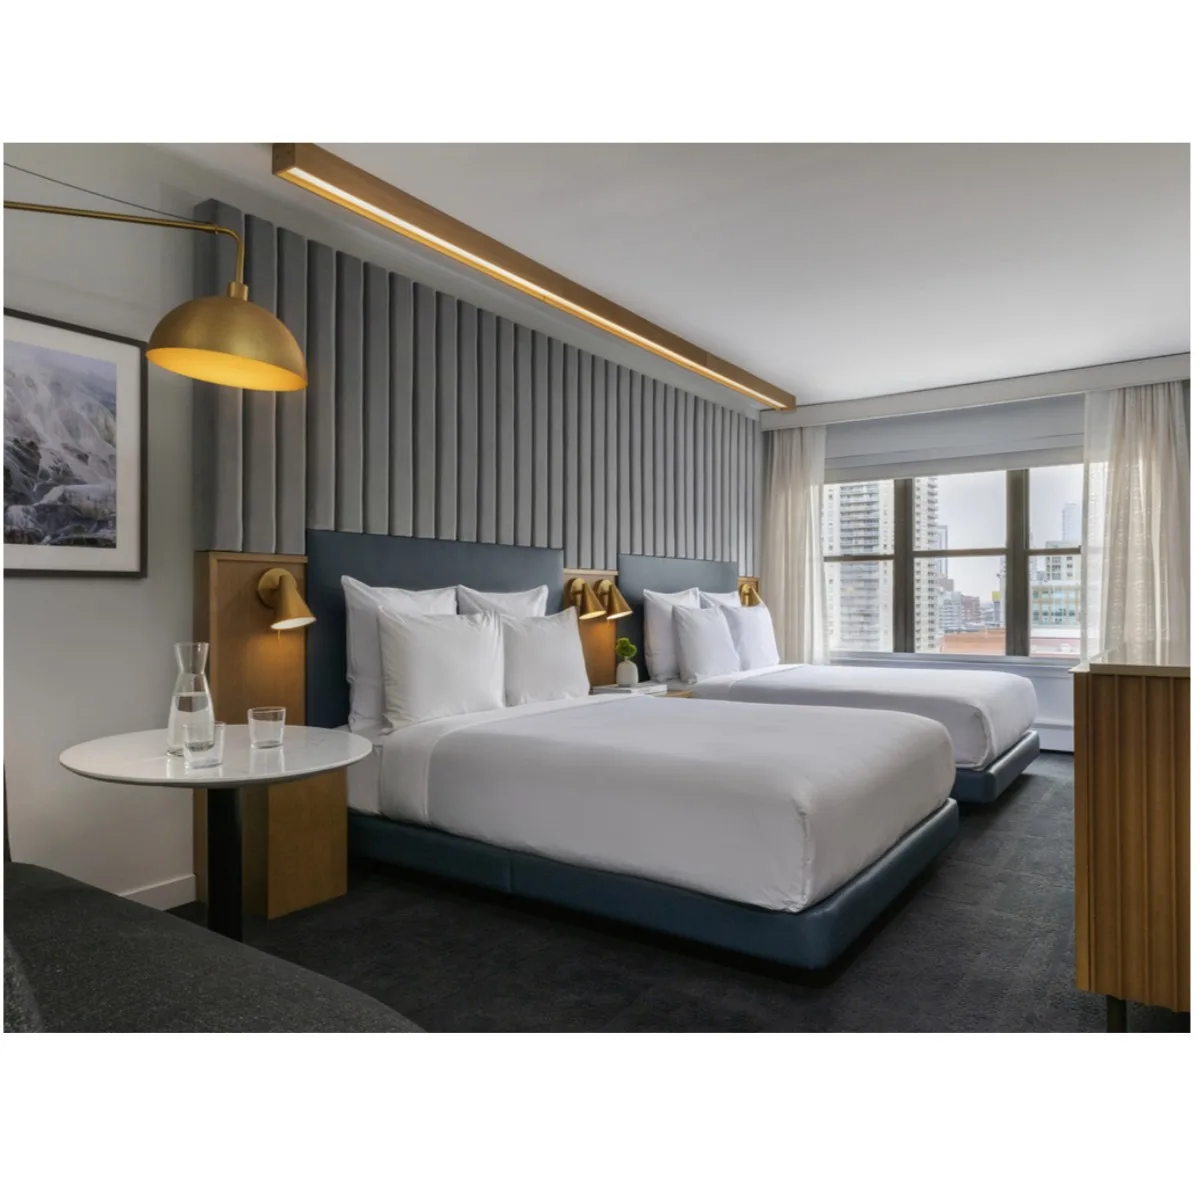 Customized Modern Hotel Room Furniture Sets 5 star hotel furniture bedroom set